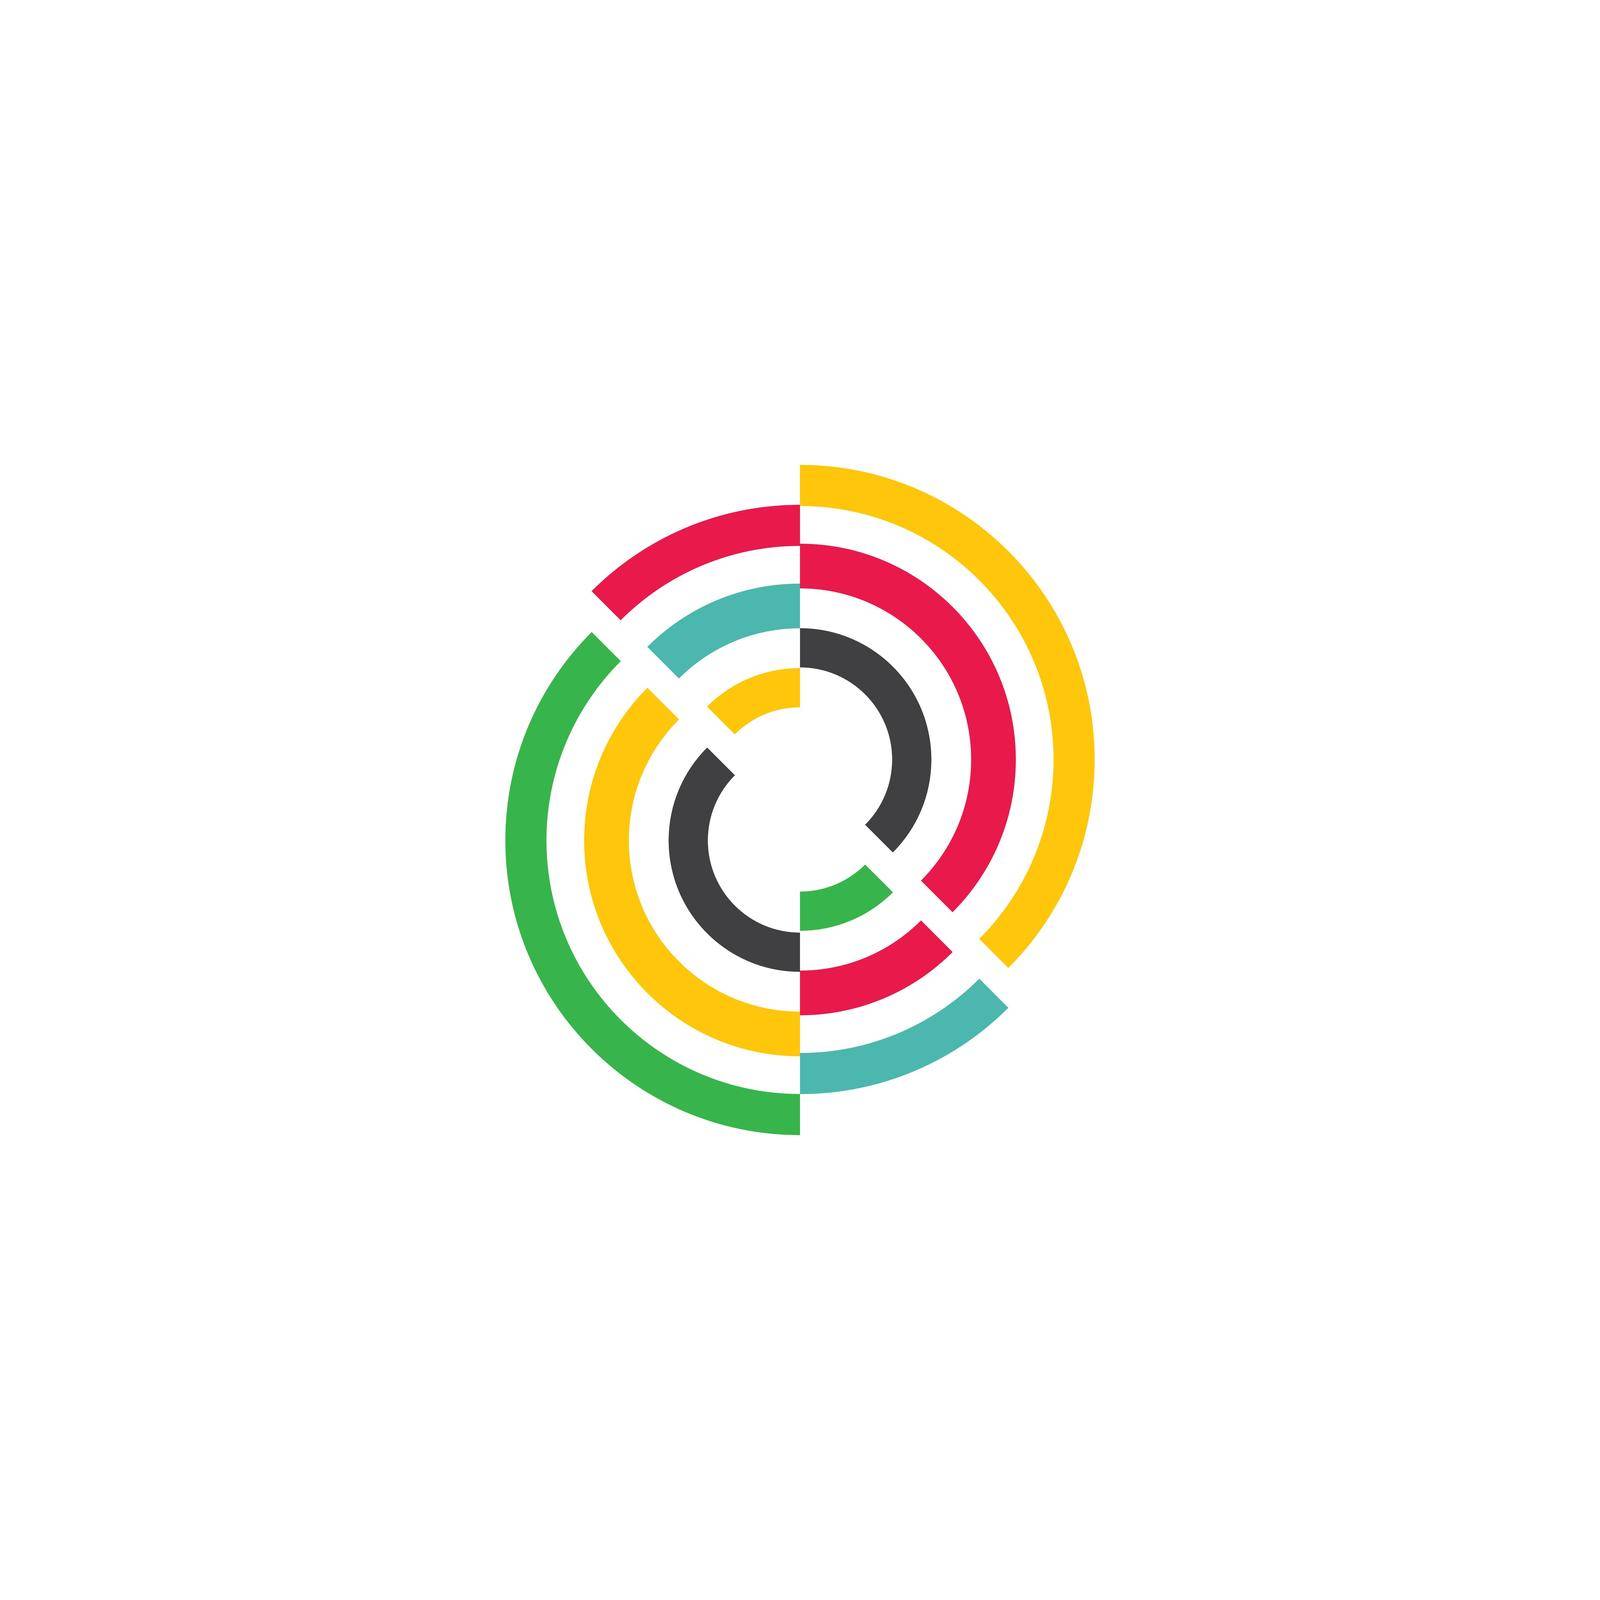 Circular logo icon vector flat design